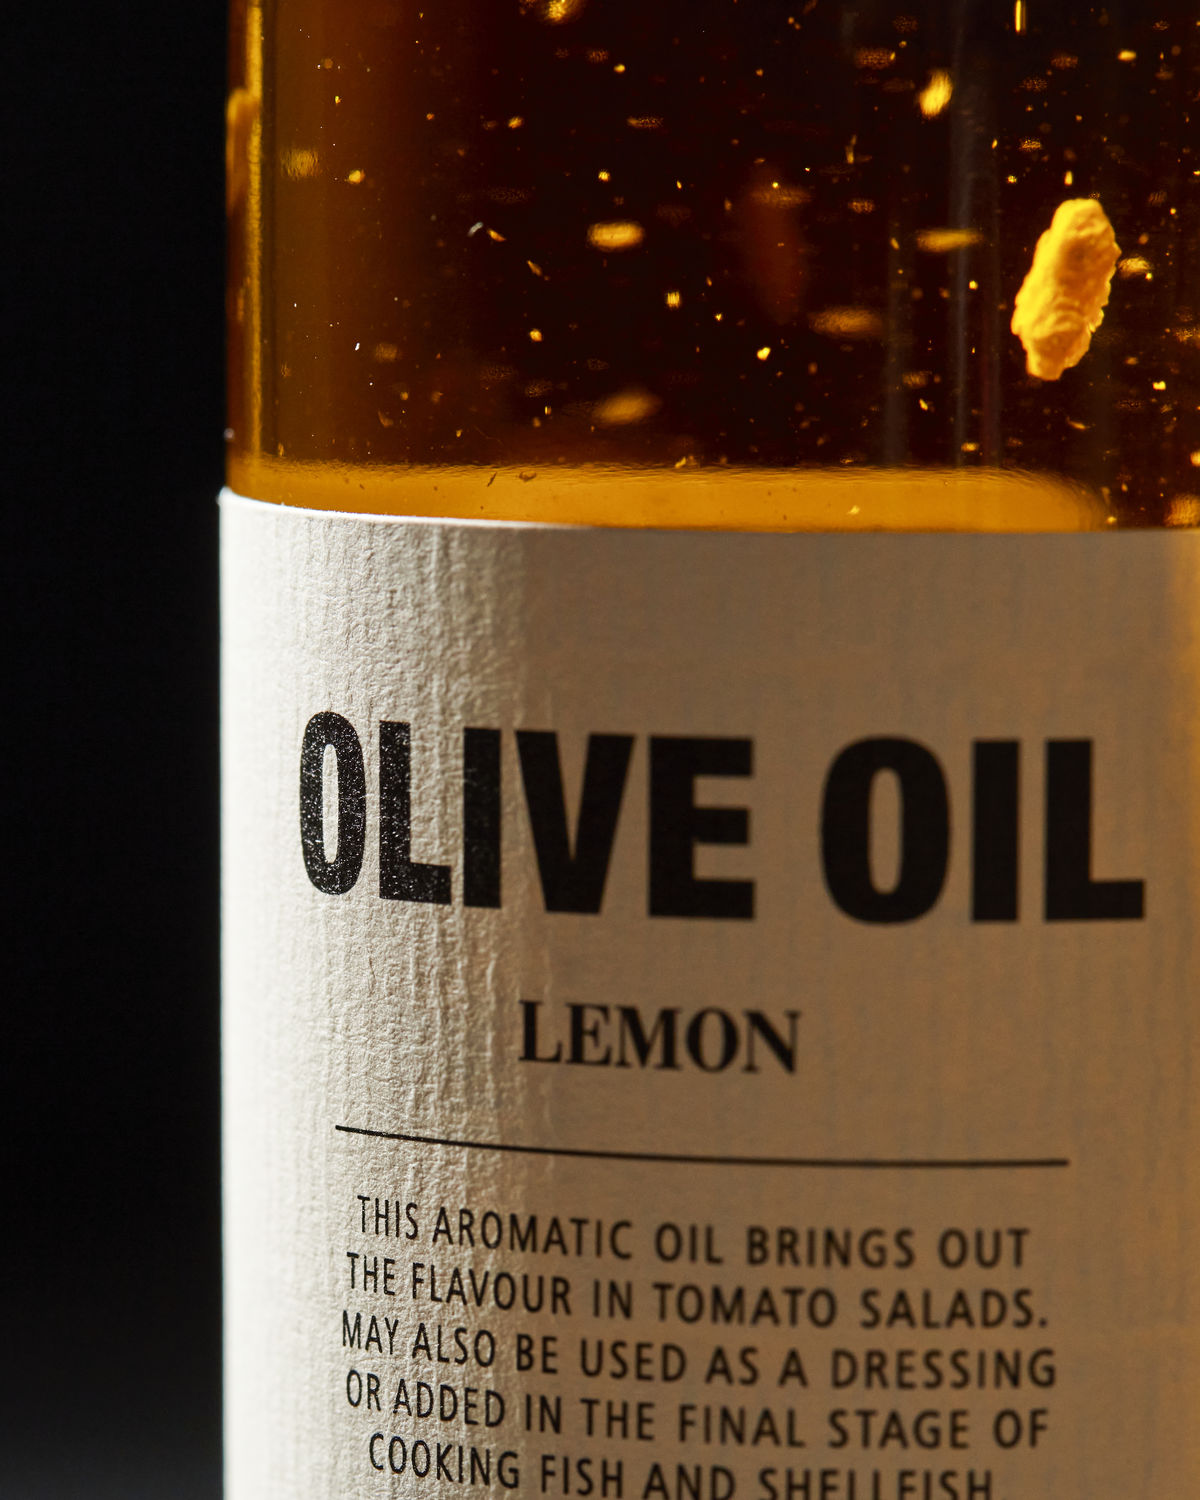 Olivenöl mit Lemon